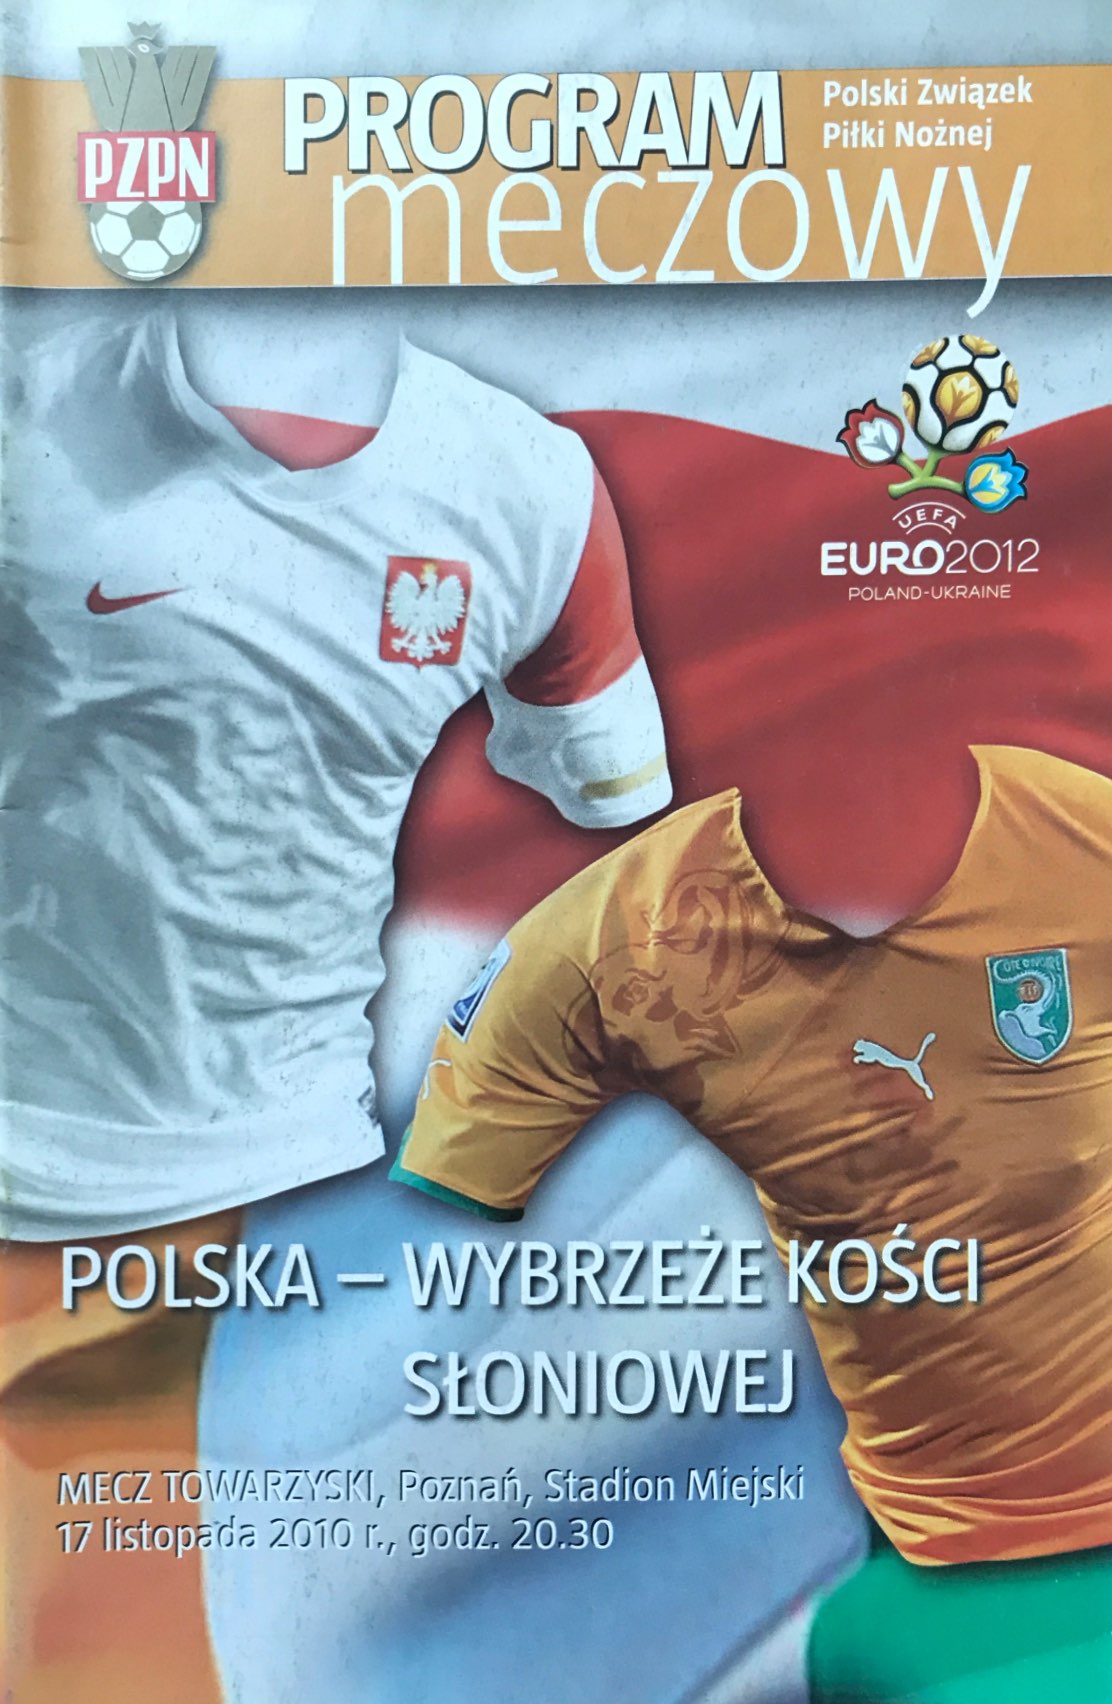 Program meczowy Polska - WKS 3:1 (17.11.2010).